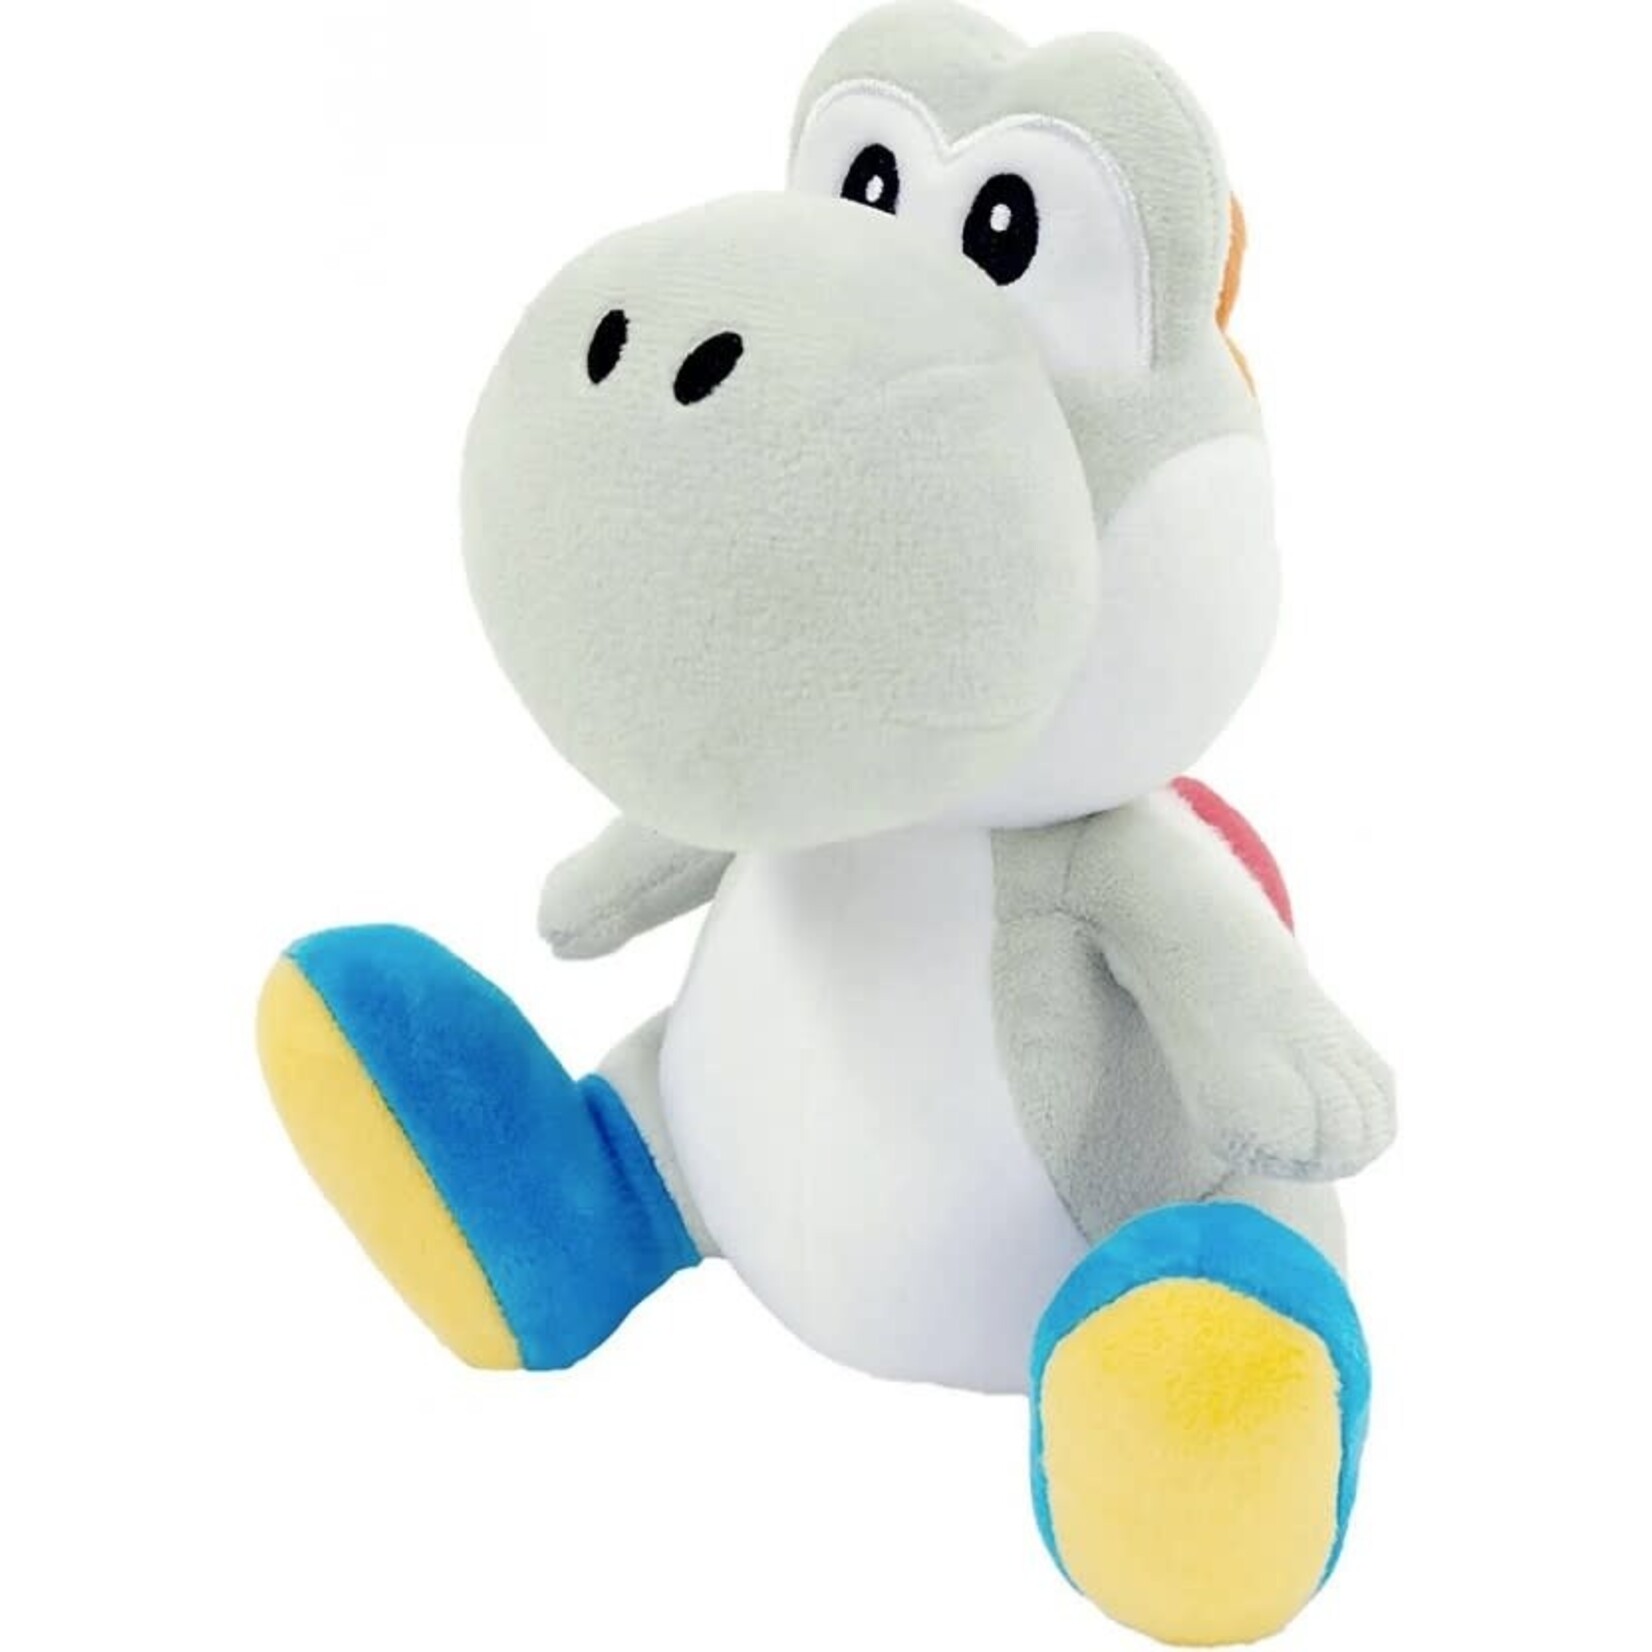 Super Mario Super Mario - Little Buddy All Star White Yoshi Plush